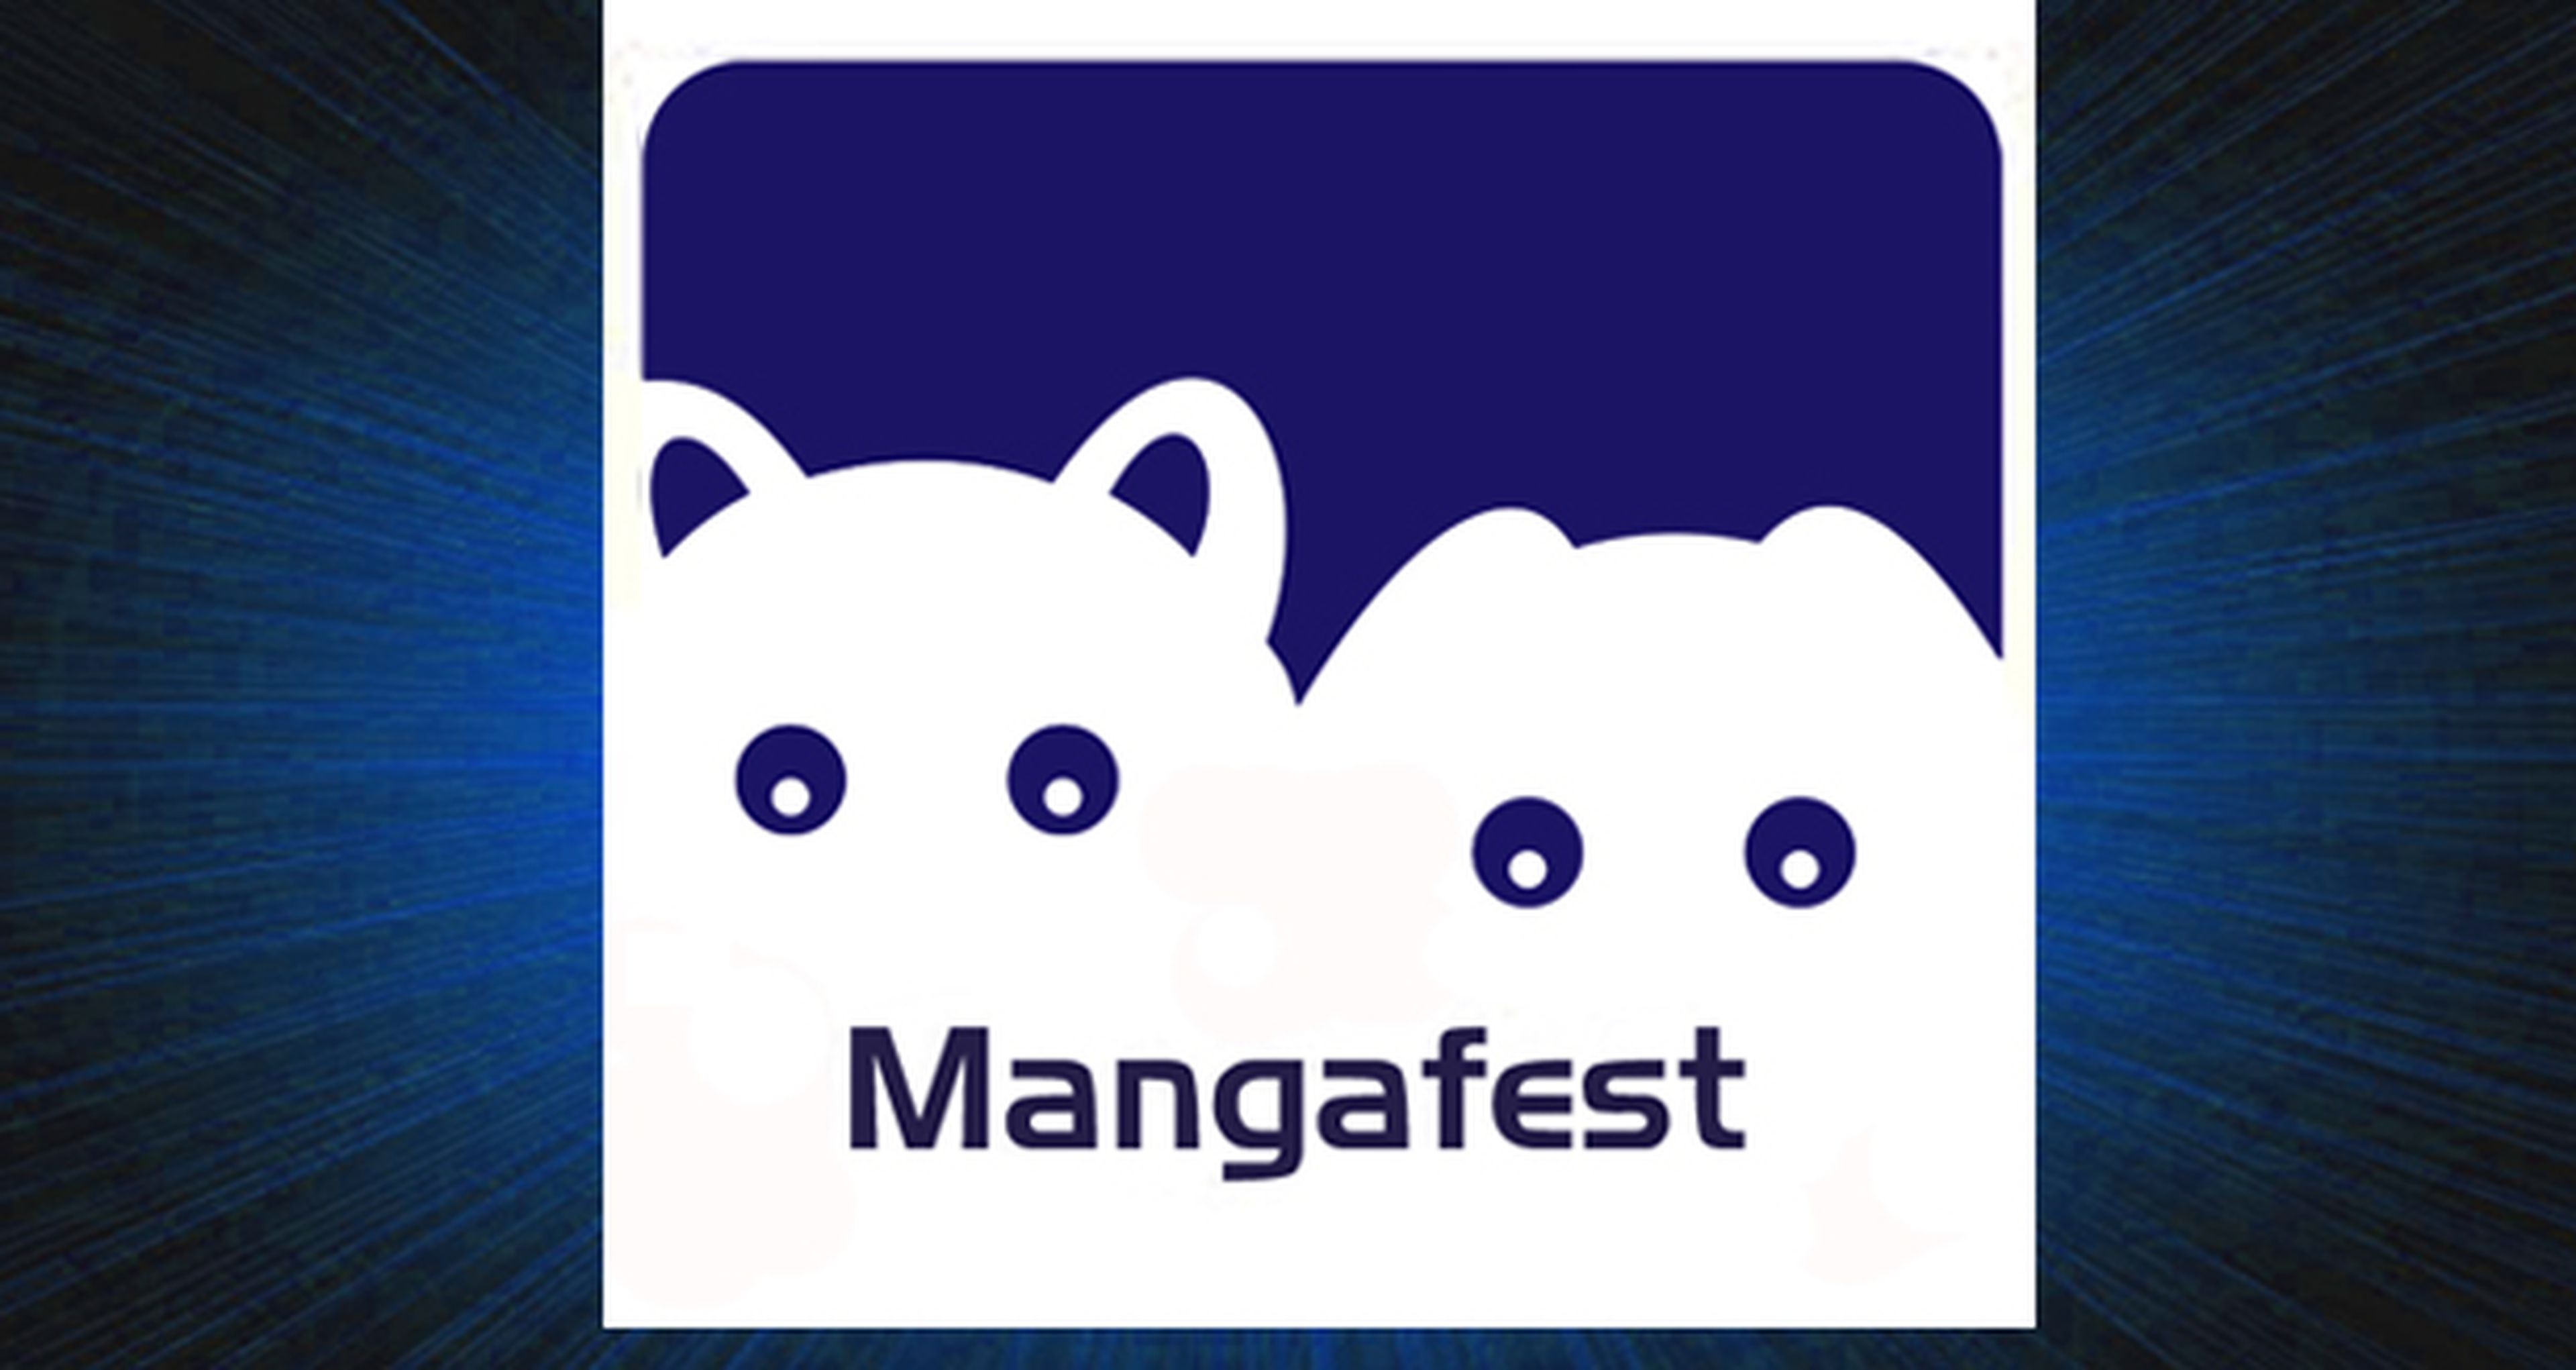 Concurso Mangafest: ¡Regalamos 5 entradas dobles!